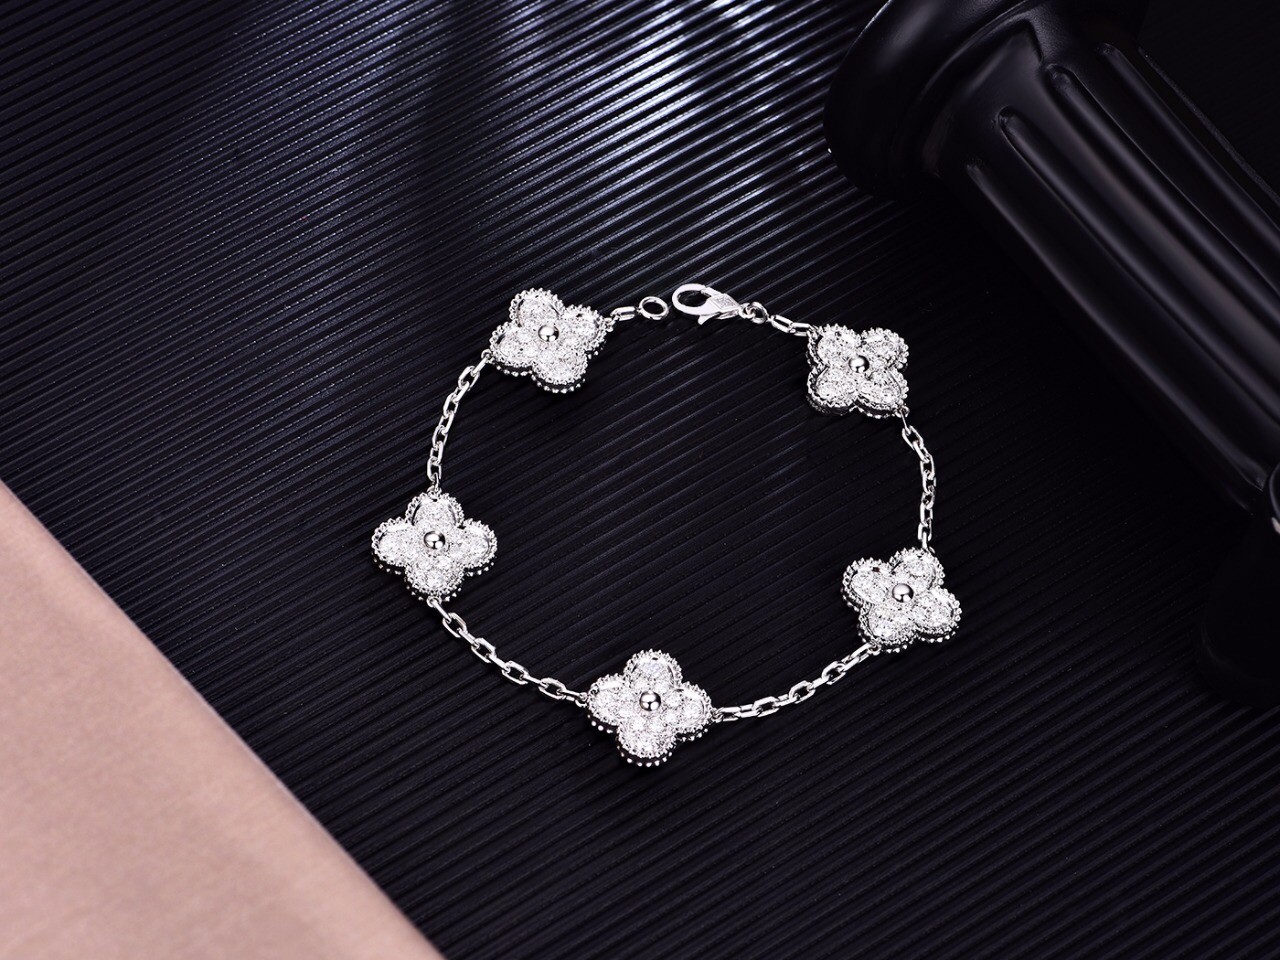  18K White Gold Full Diamond Van Cleef And Arpels Sweet Alhambra Bracelet Flower Shape Manufactures